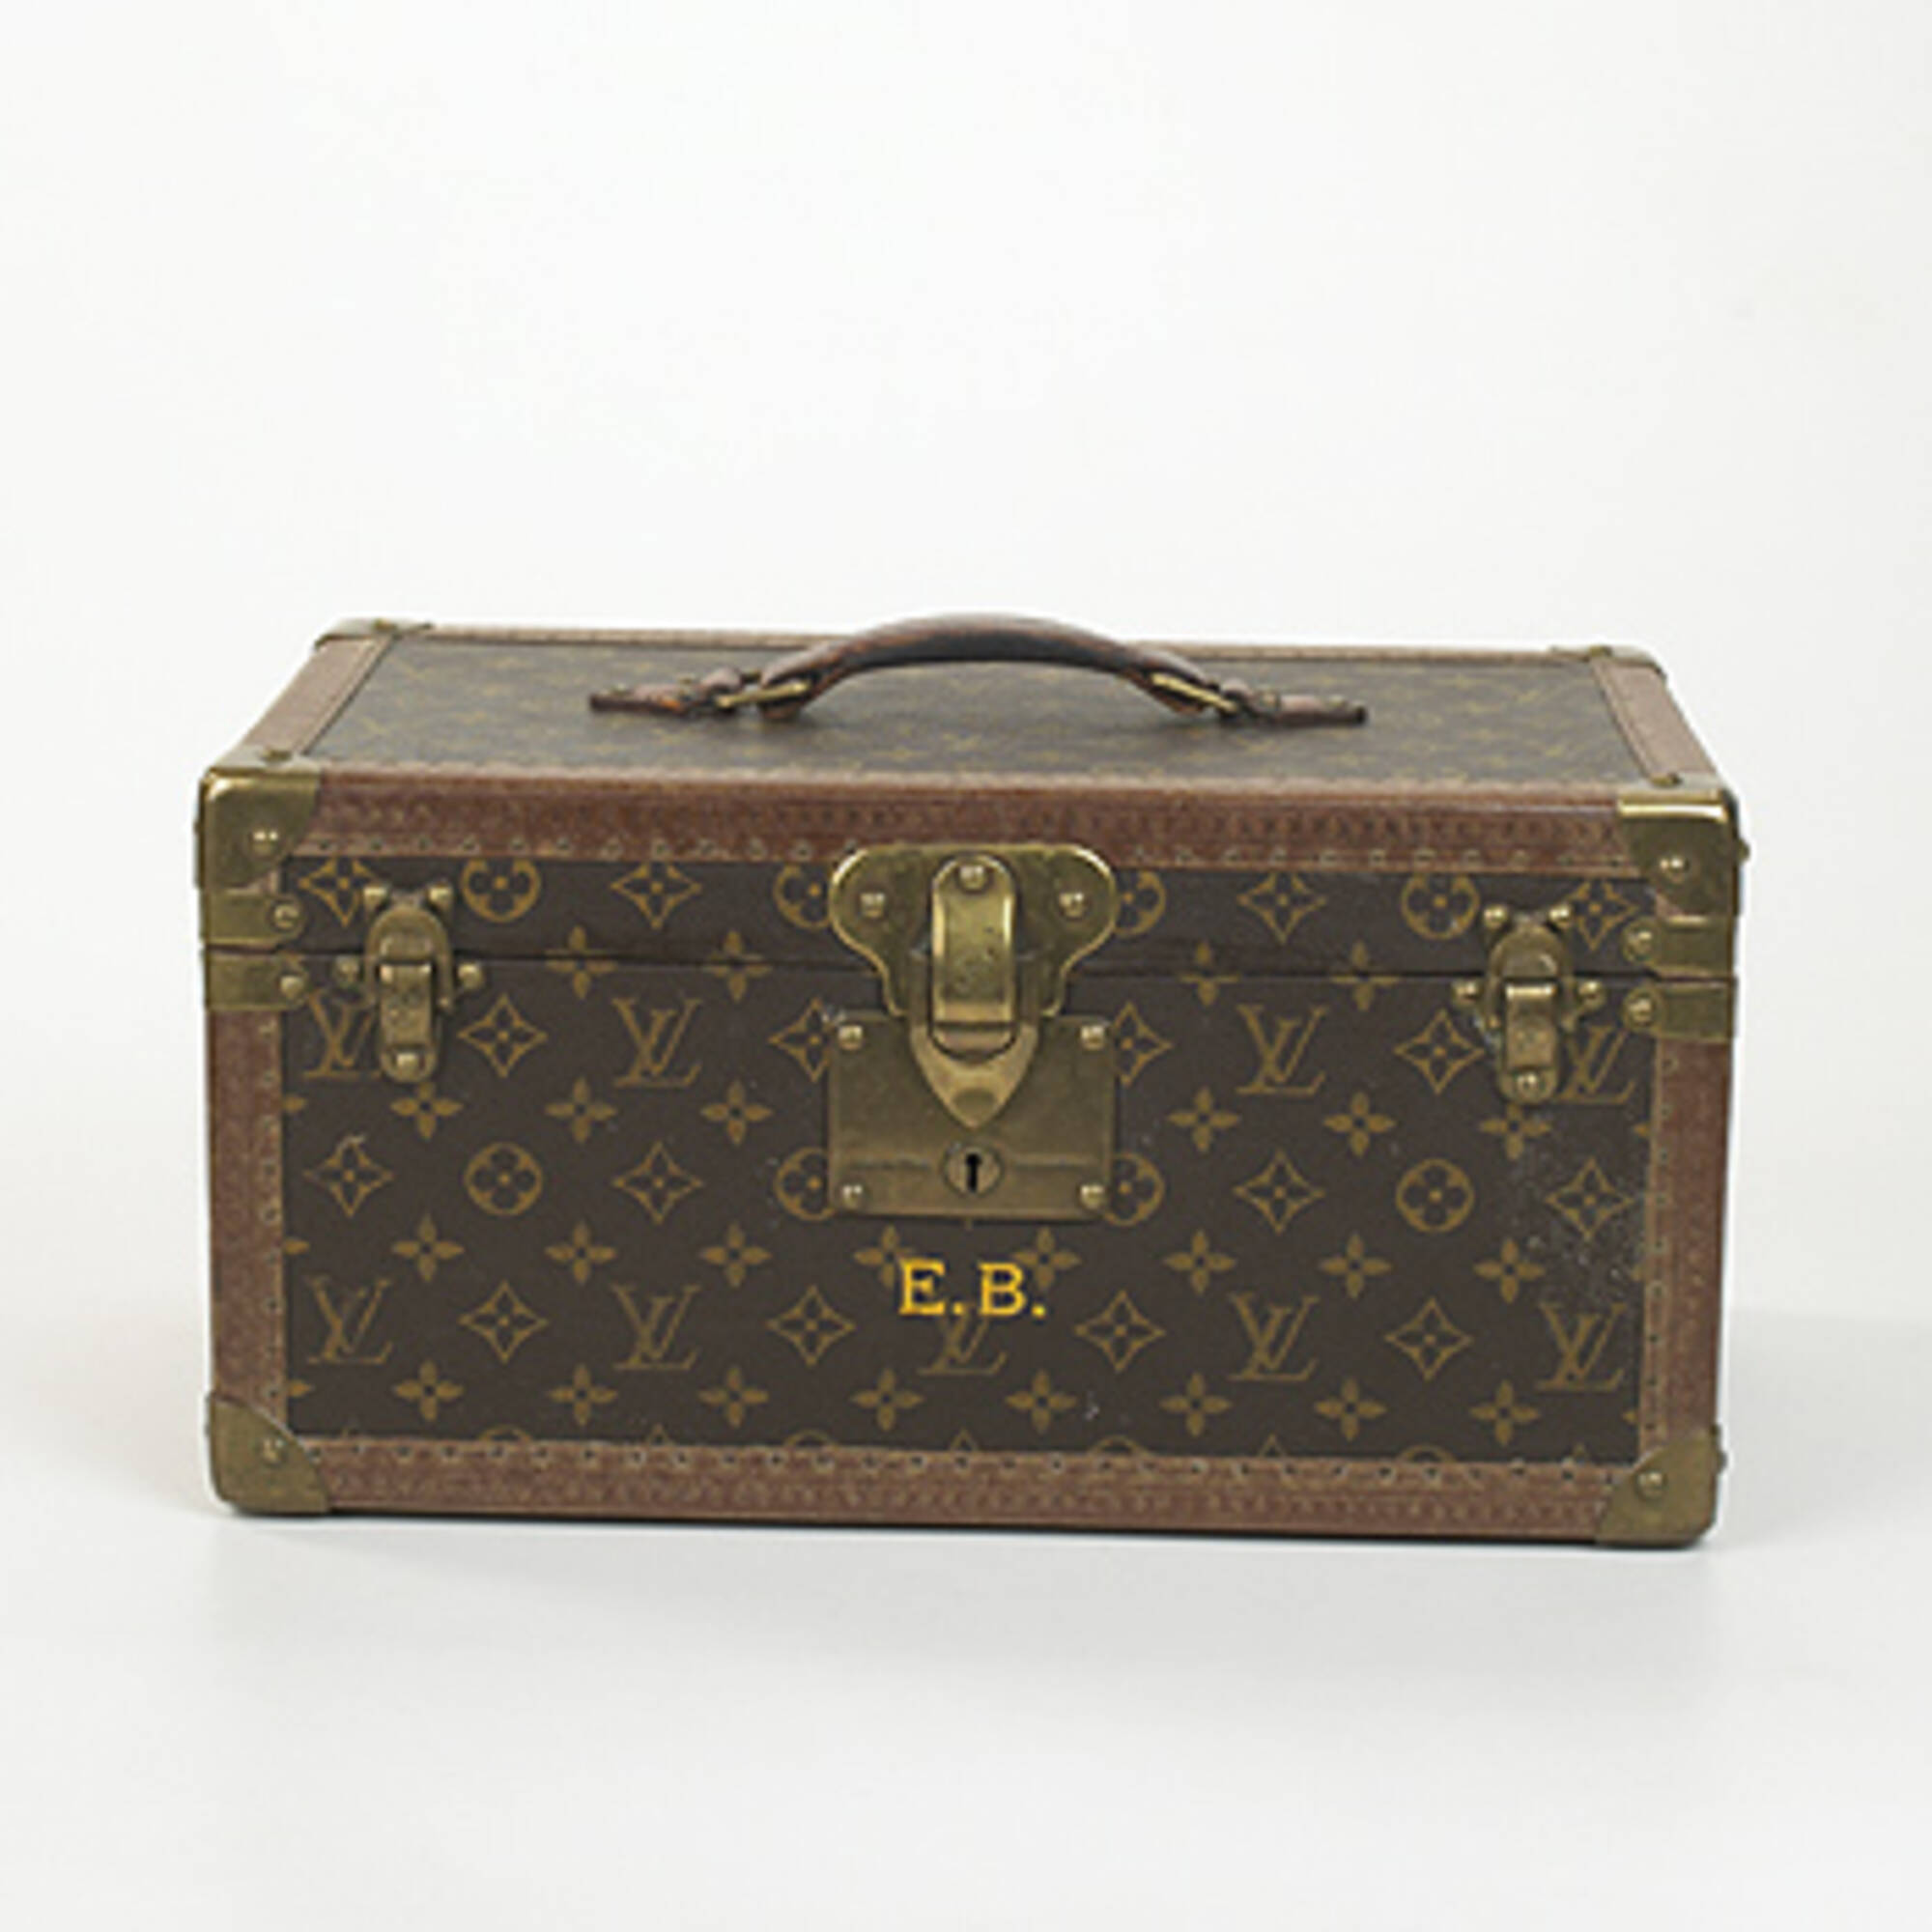 Lous Vuitton Travel Auction